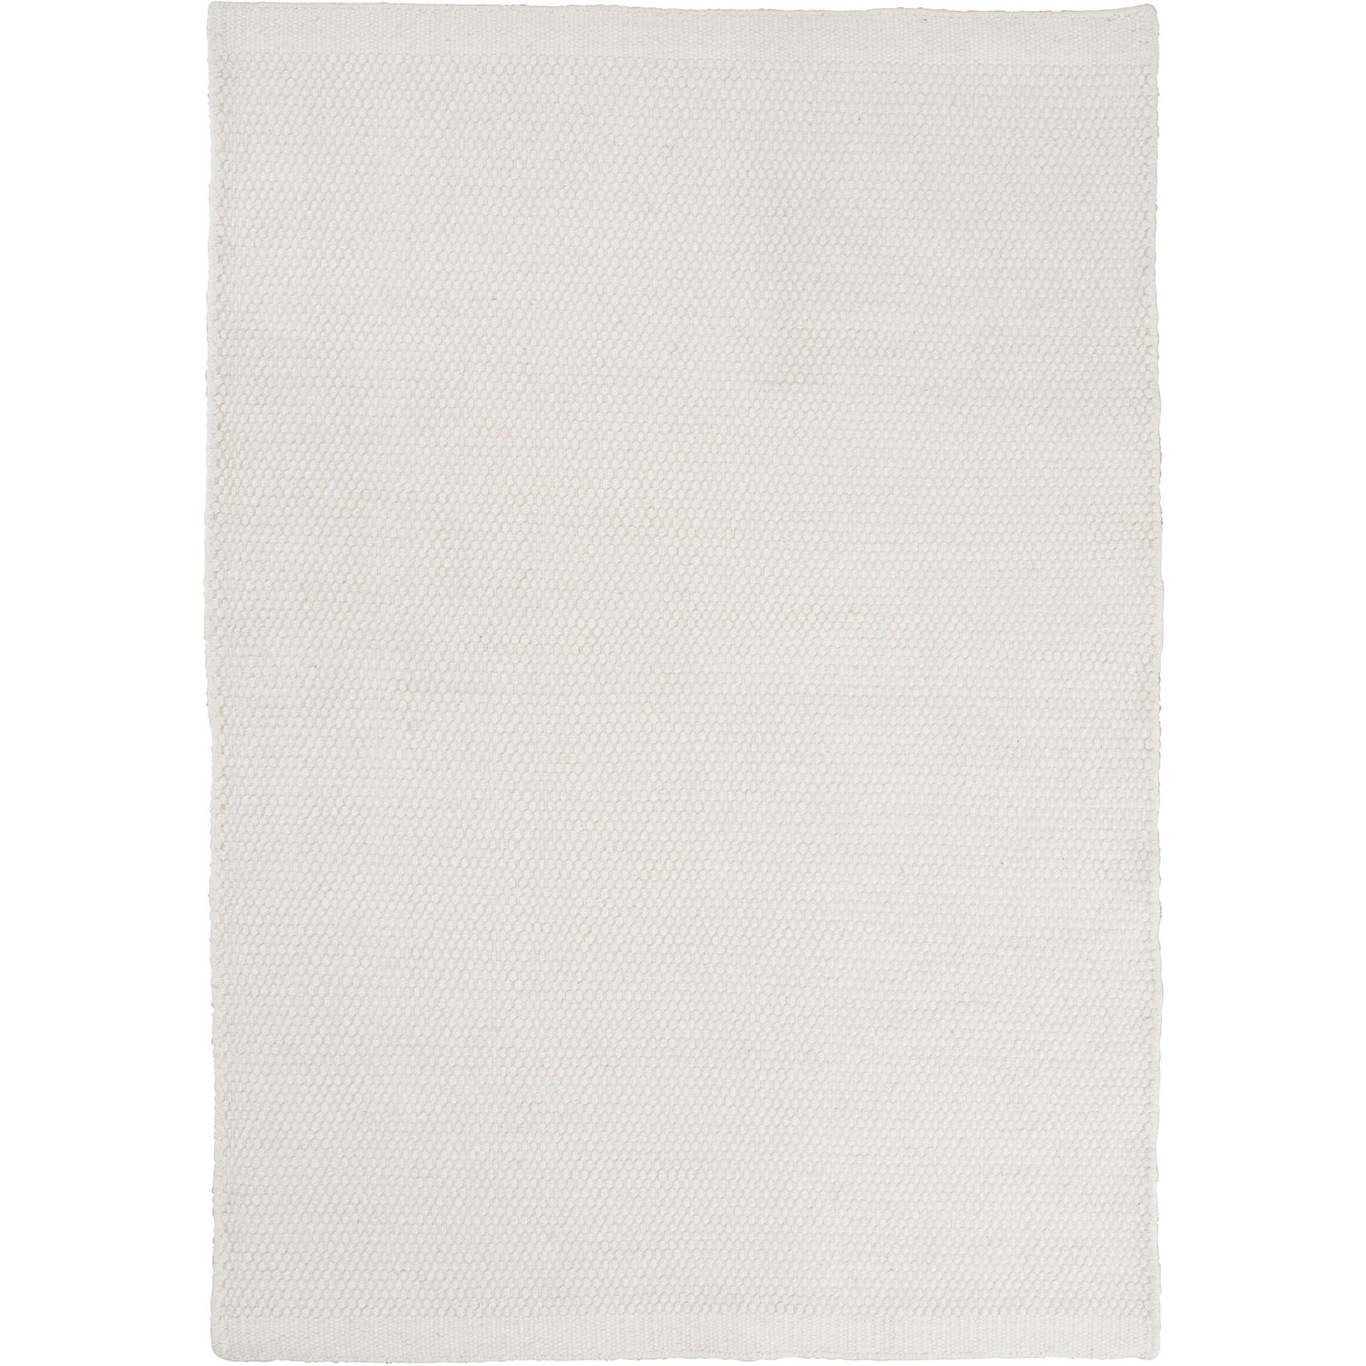 Asko Tæppe Hvidt, 170x240 cm